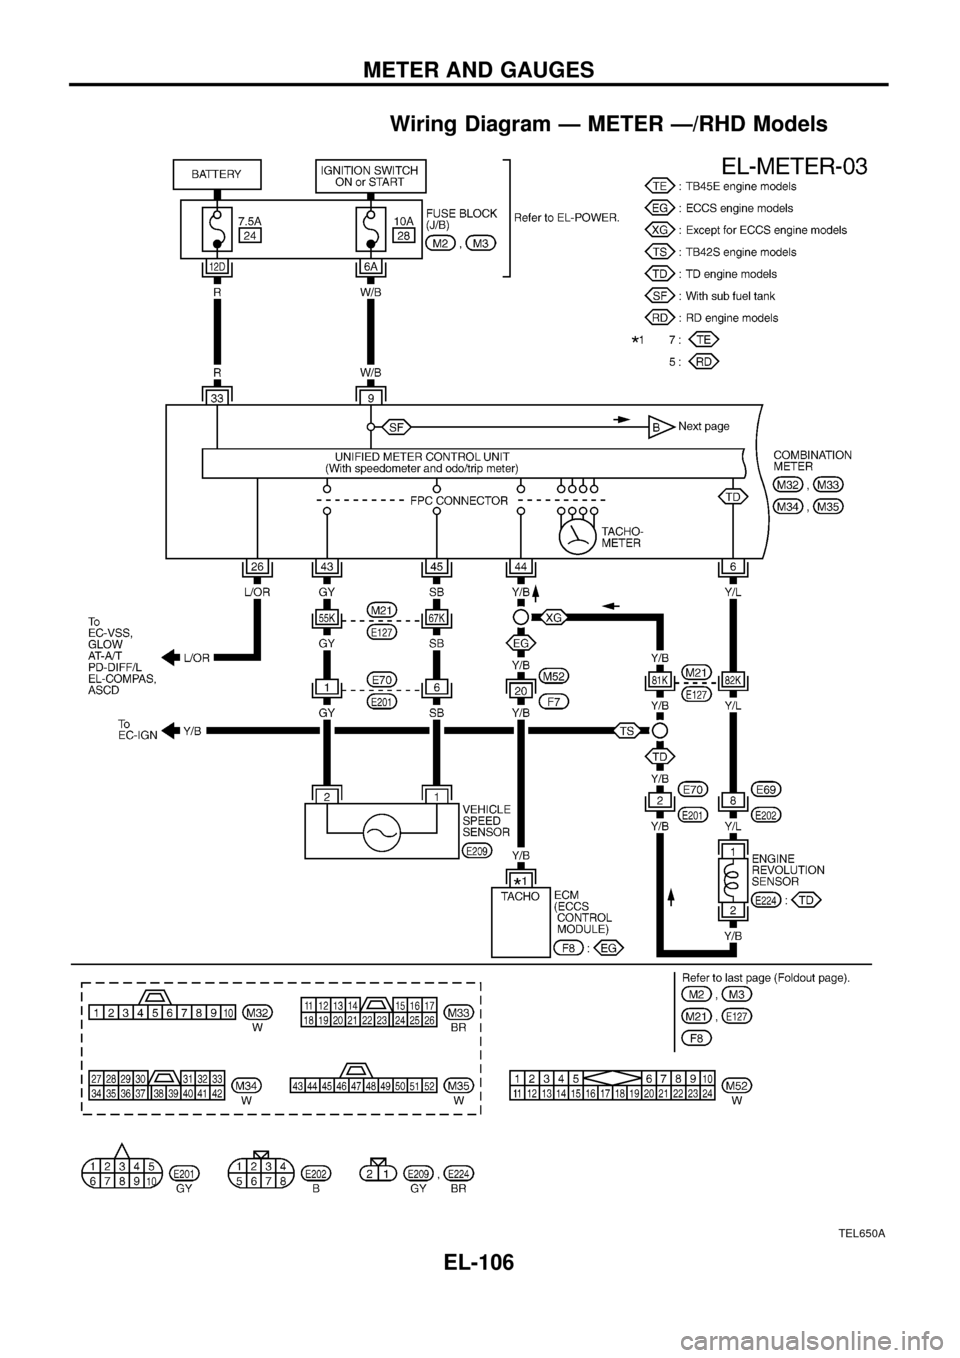 NISSAN PATROL 1998 Y61 / 5.G Electrical System Service Manual Wiring Diagram Ð METER Ð/RHD Models
TEL650A
METER AND GAUGES
EL-106 